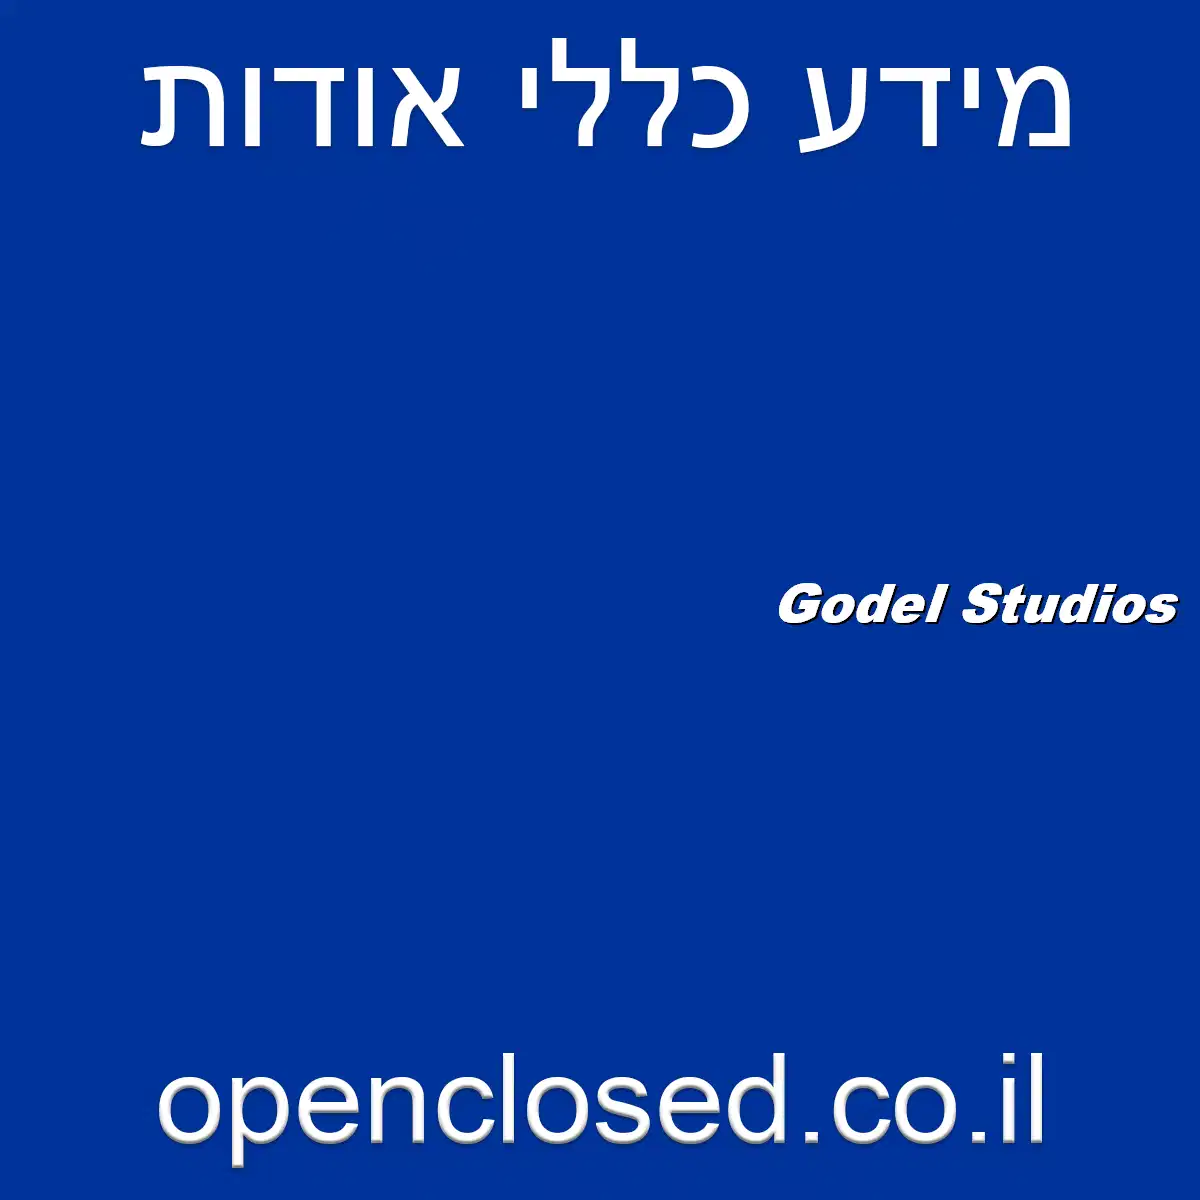 Godel Studios